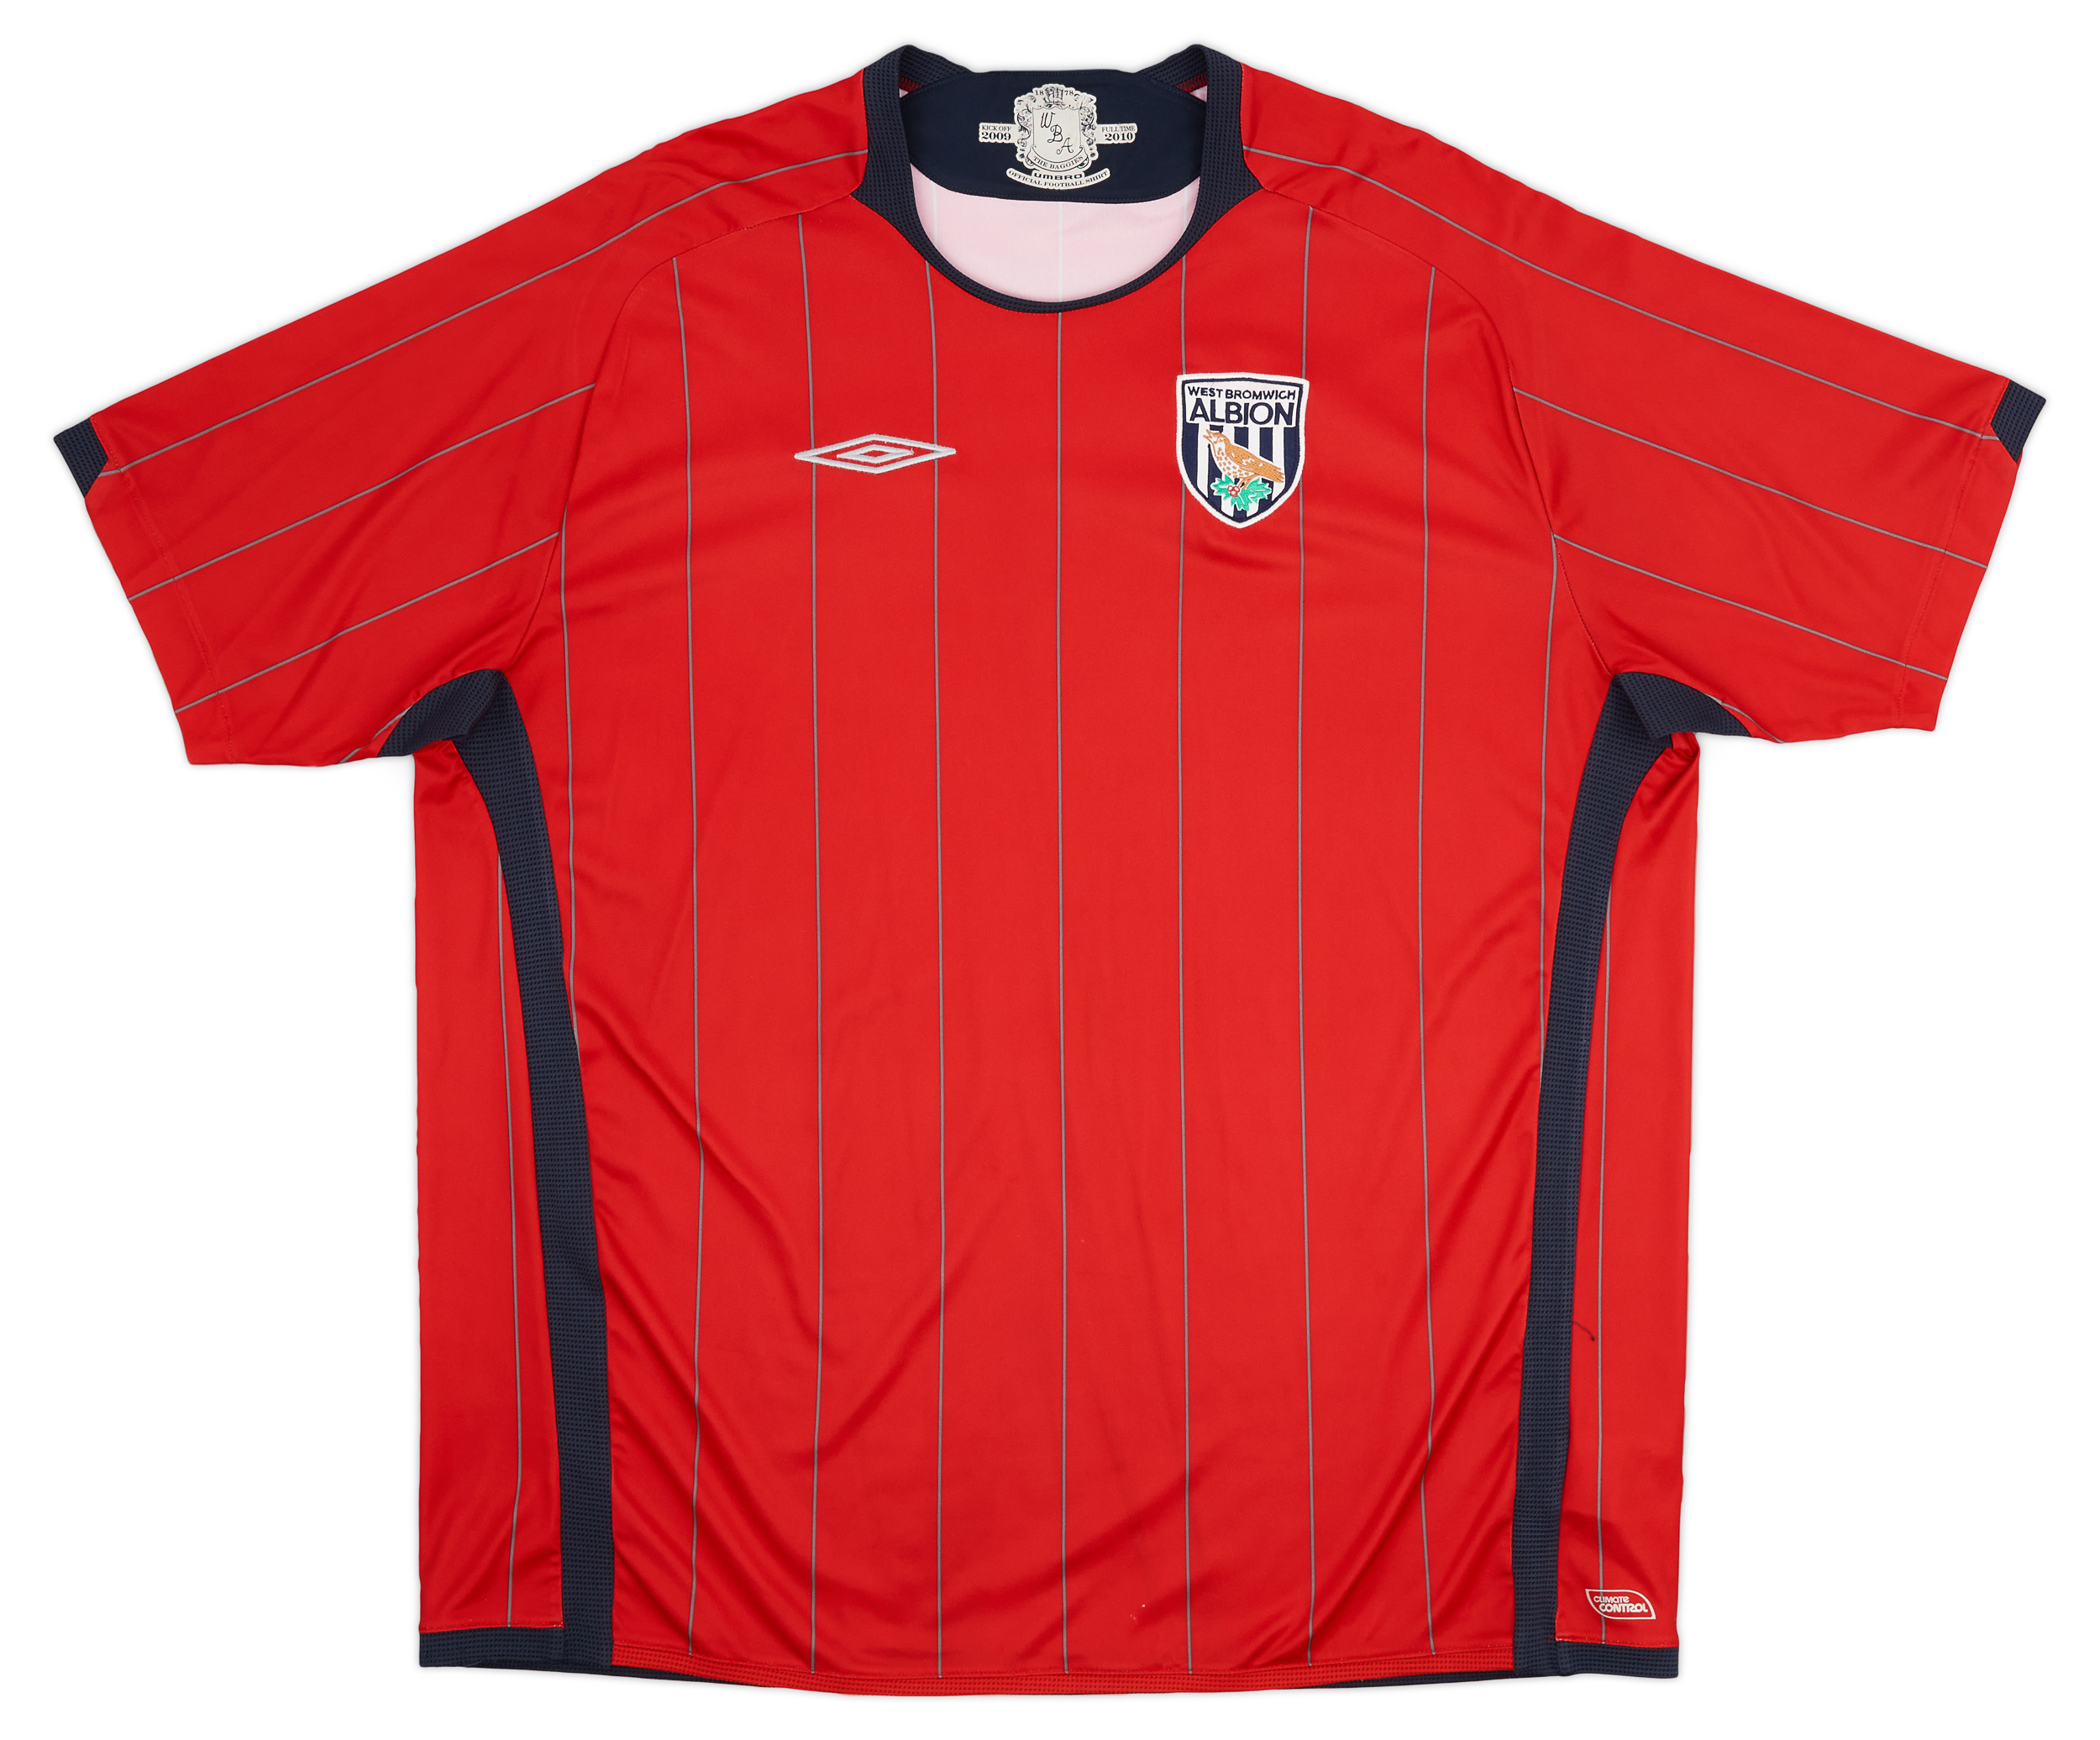 West Bromwich Albion  חוץ חולצה (Original)